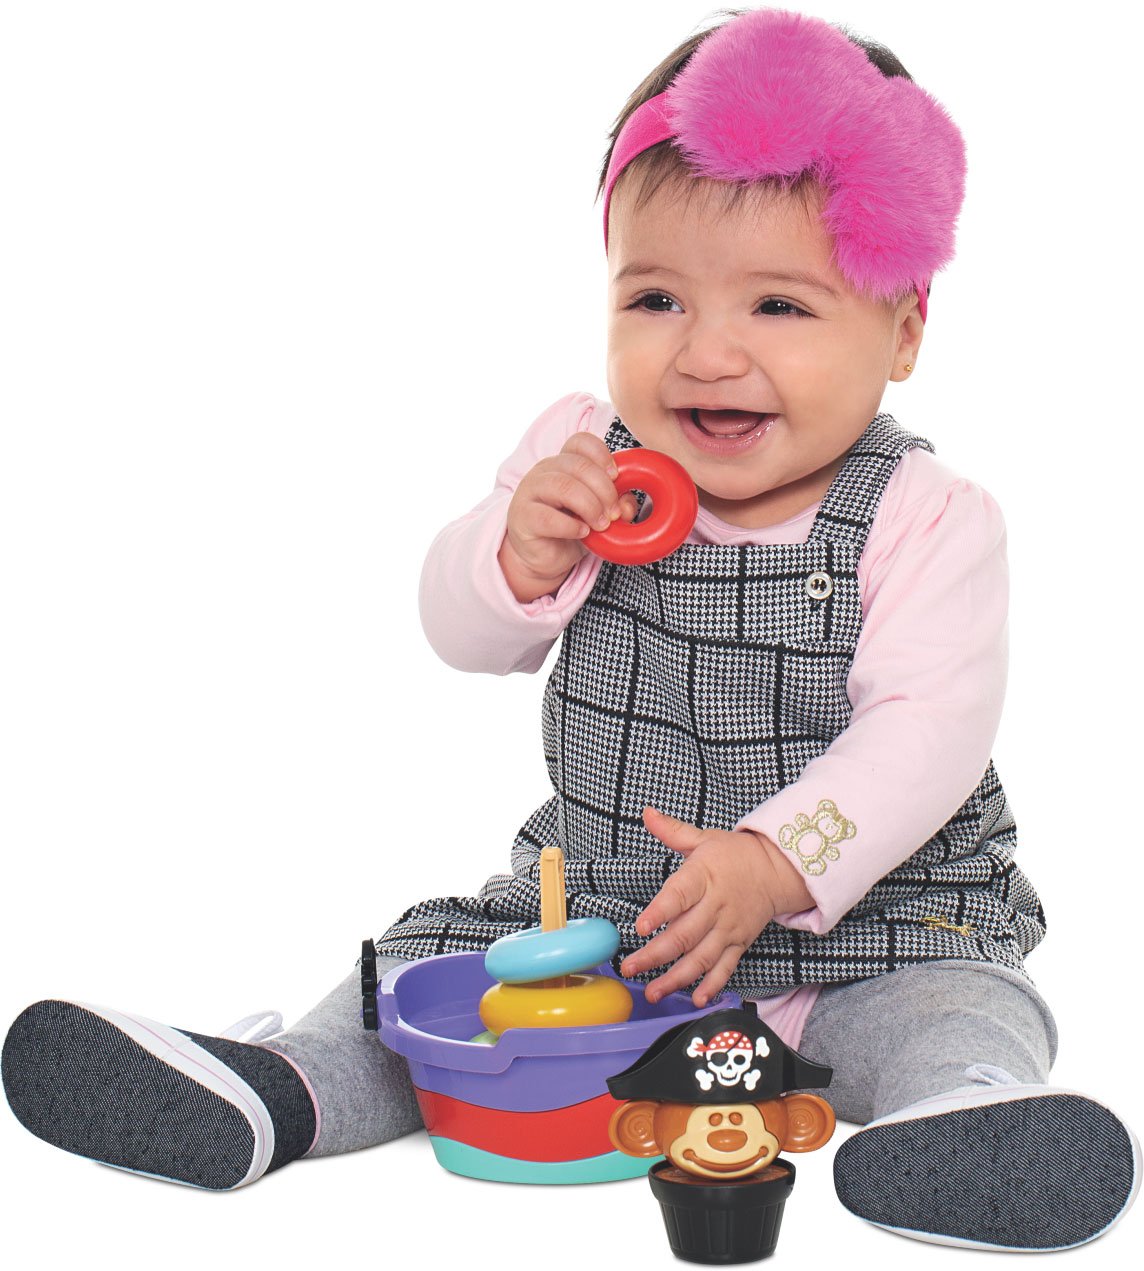 Empilha Baby Pirata - Brinquedo para Bebês acima de 5 meses - 4